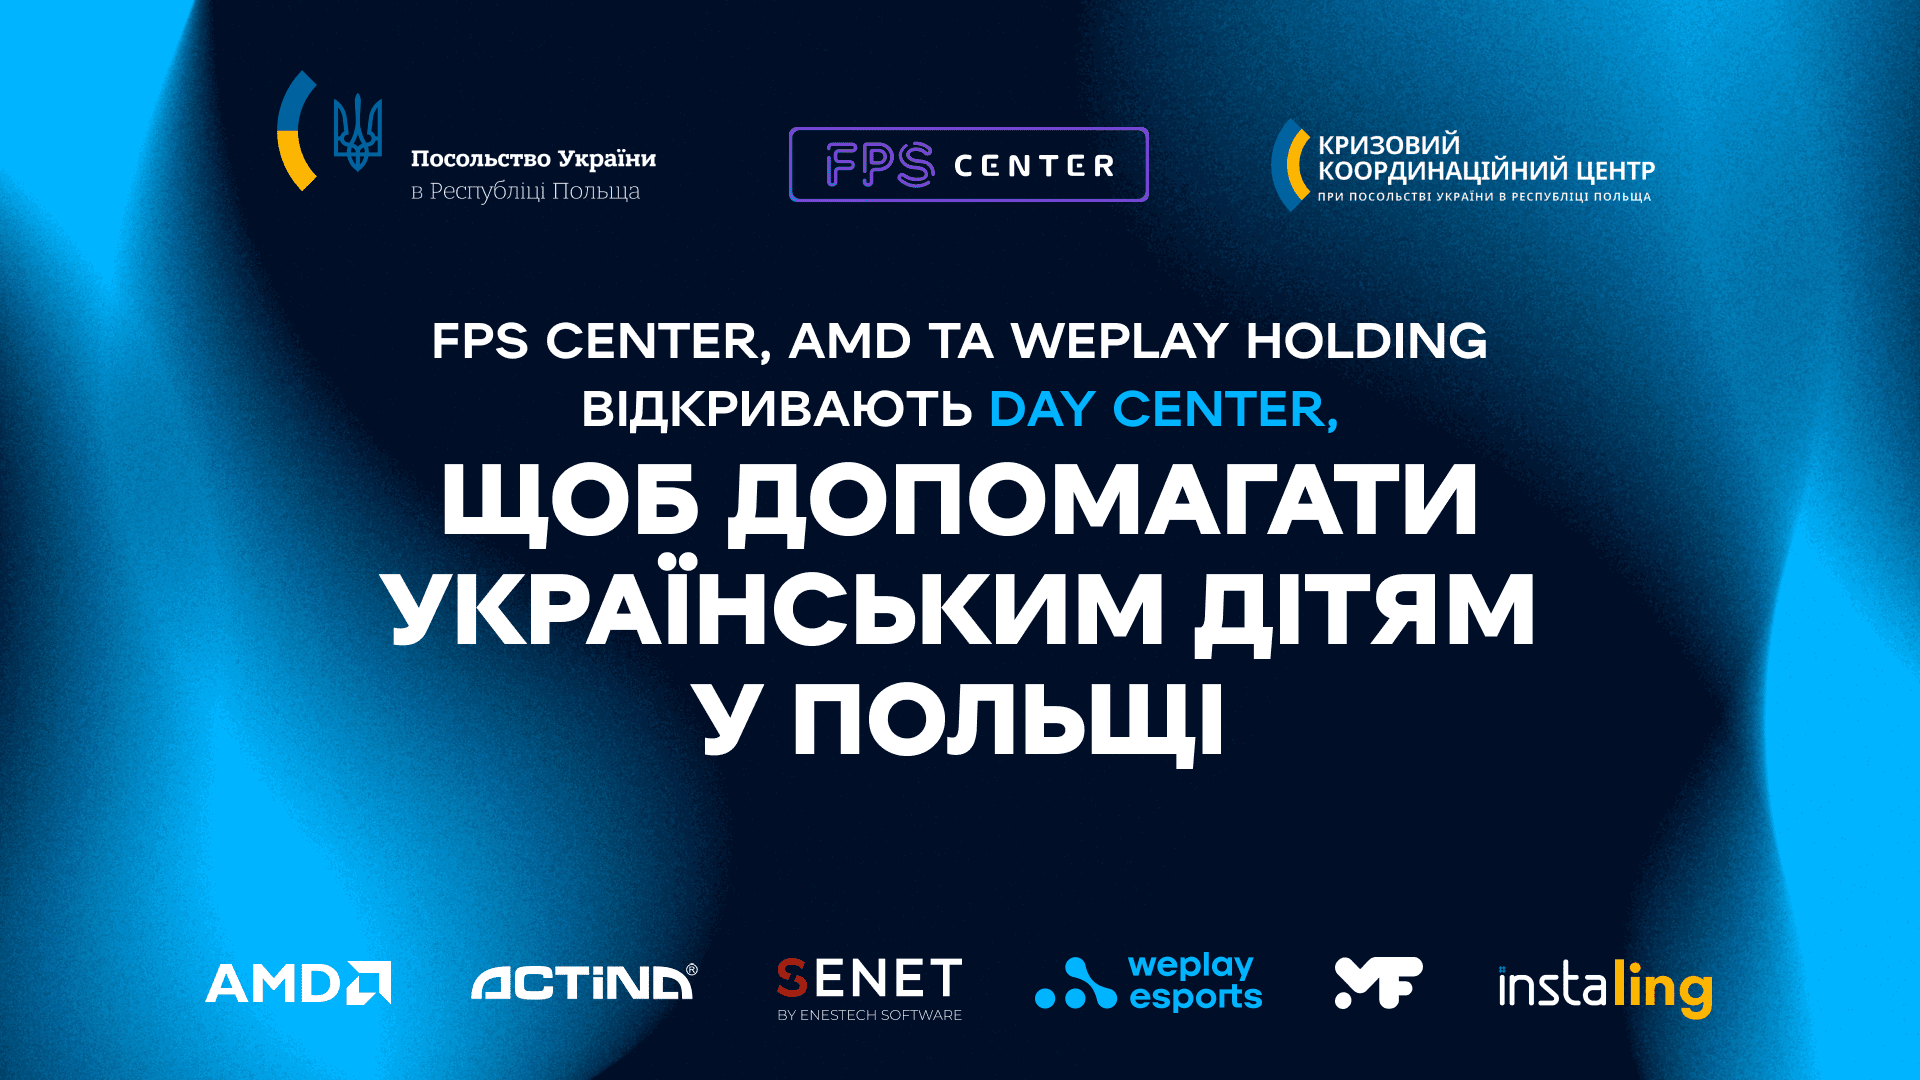 FPS Center, AMD та WePlay Holding відкривають Day Center, щоб допомагати українським дітям у Польщі. Зображення: WePlay Holding